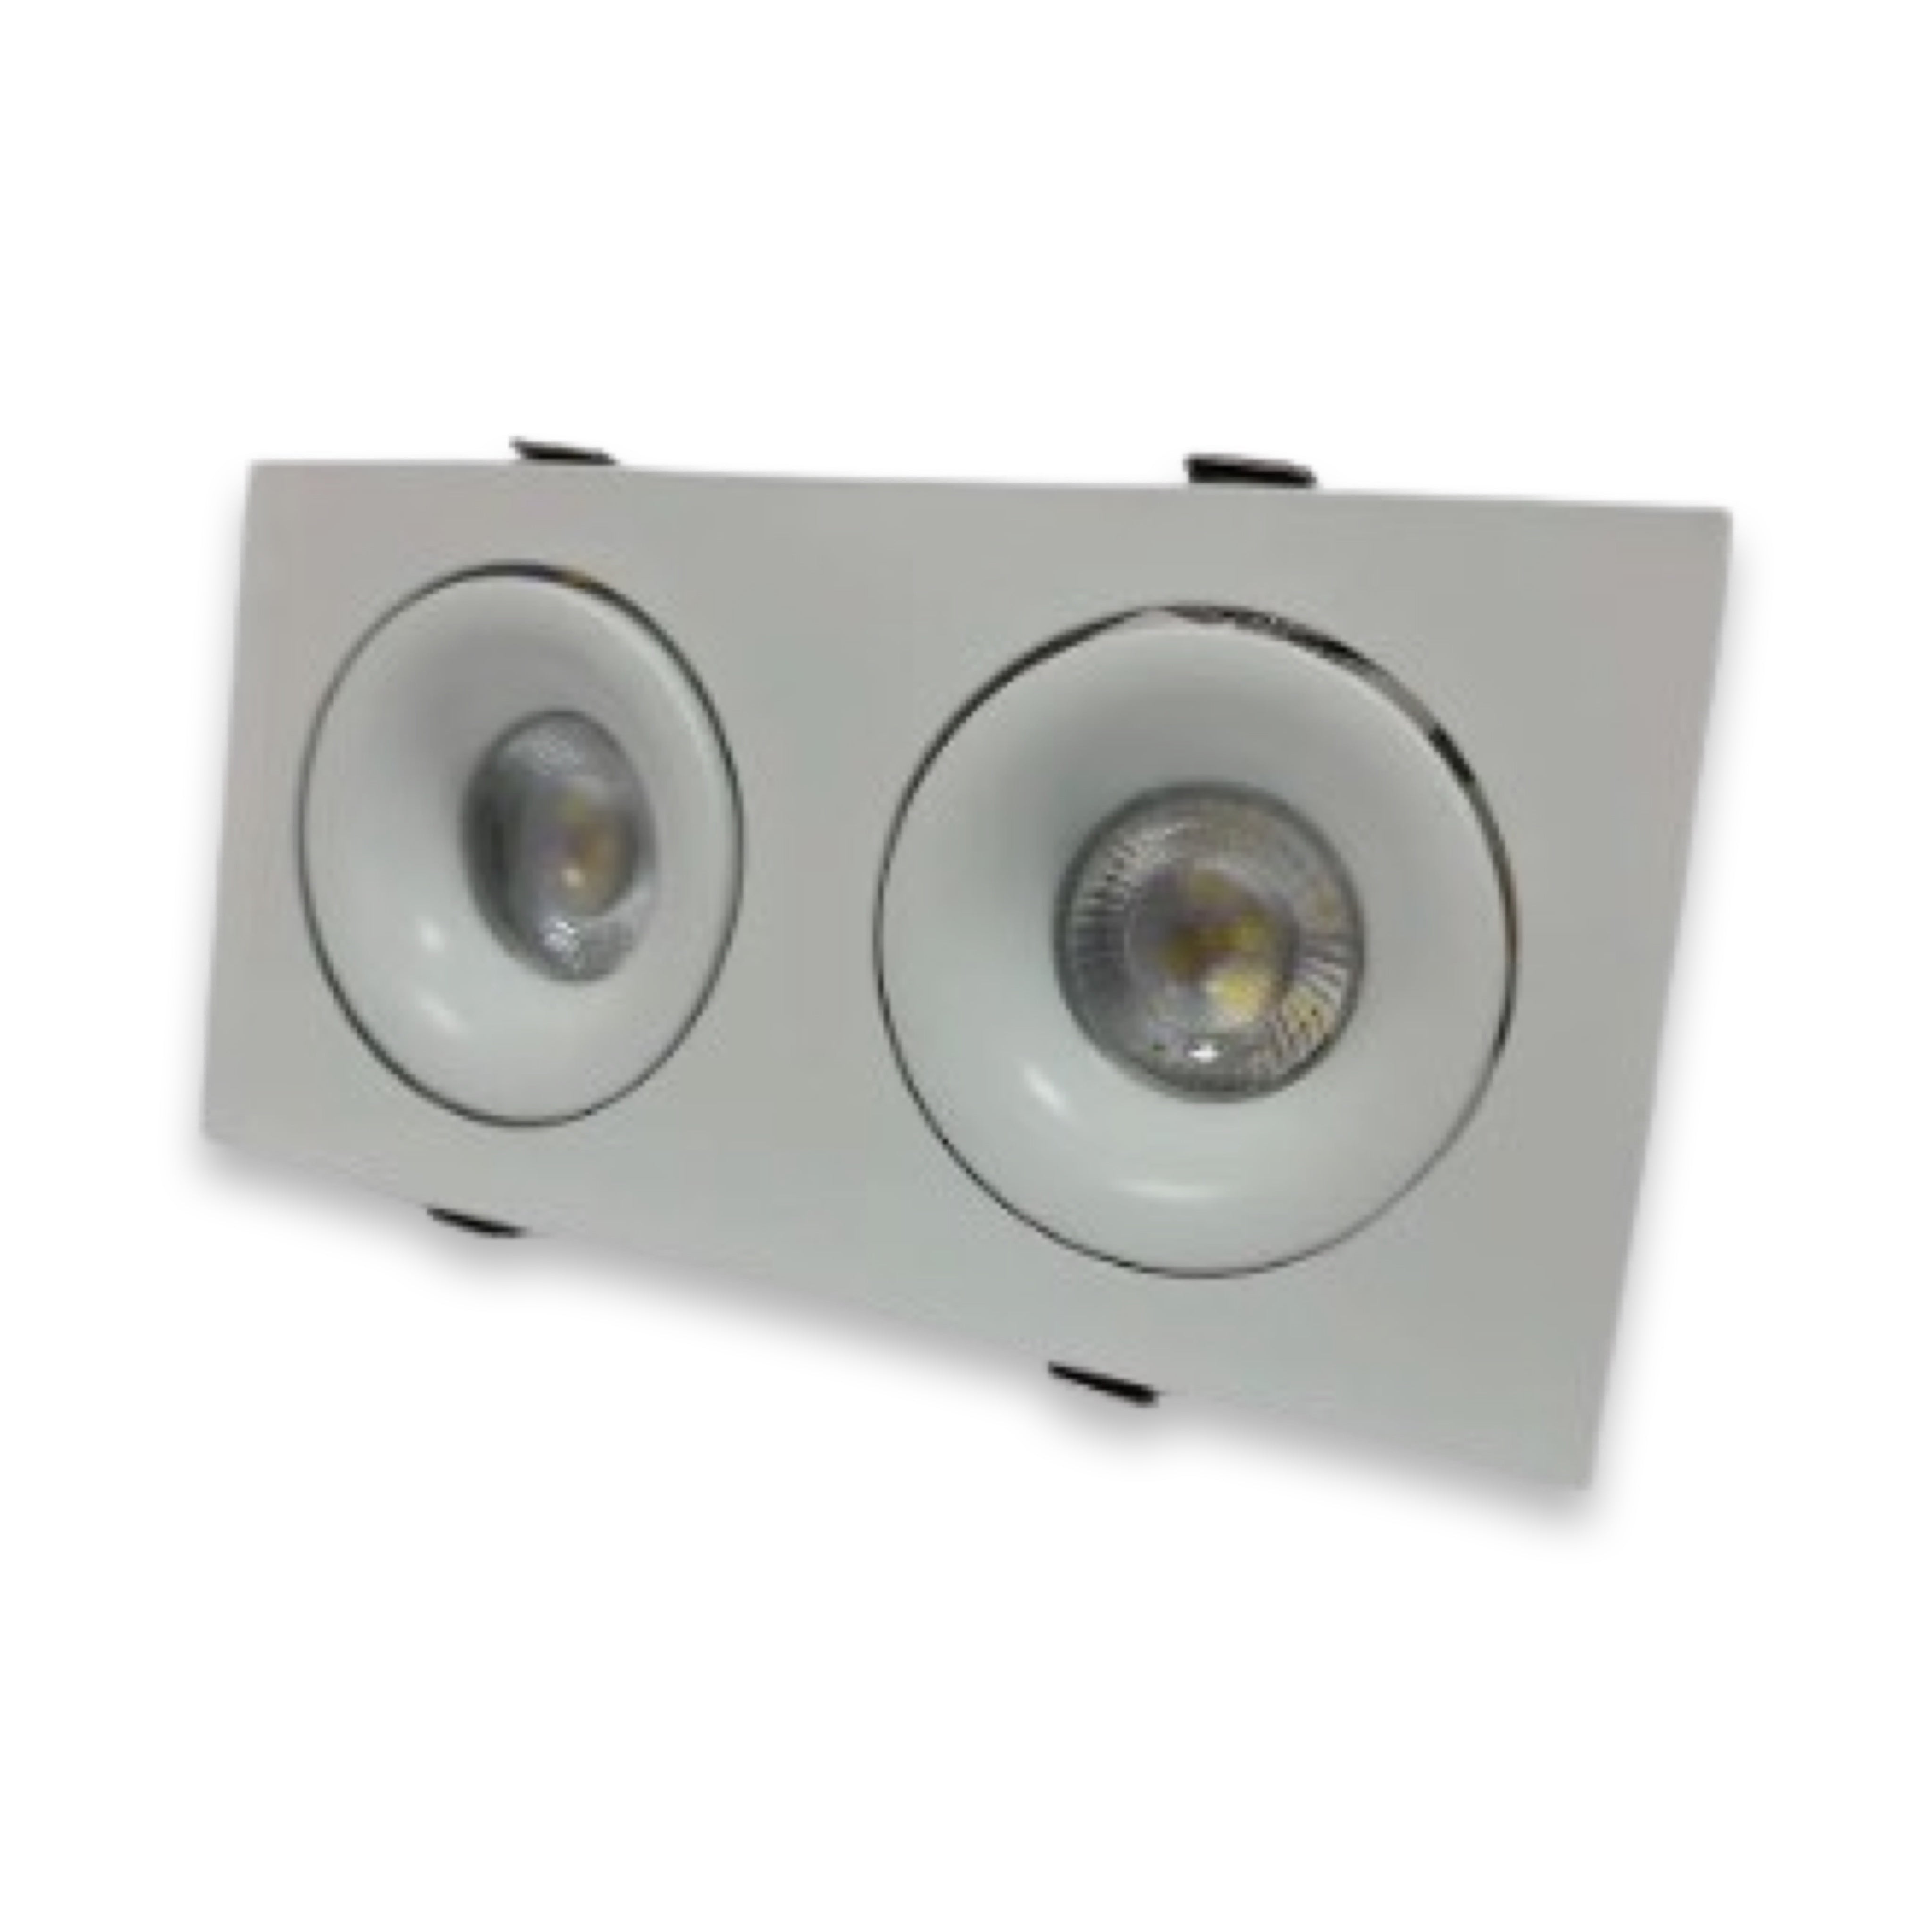 Adjustable Twin GU10 Recessed Downlight - 350° Tilt Spotlight - Light fixtures UK